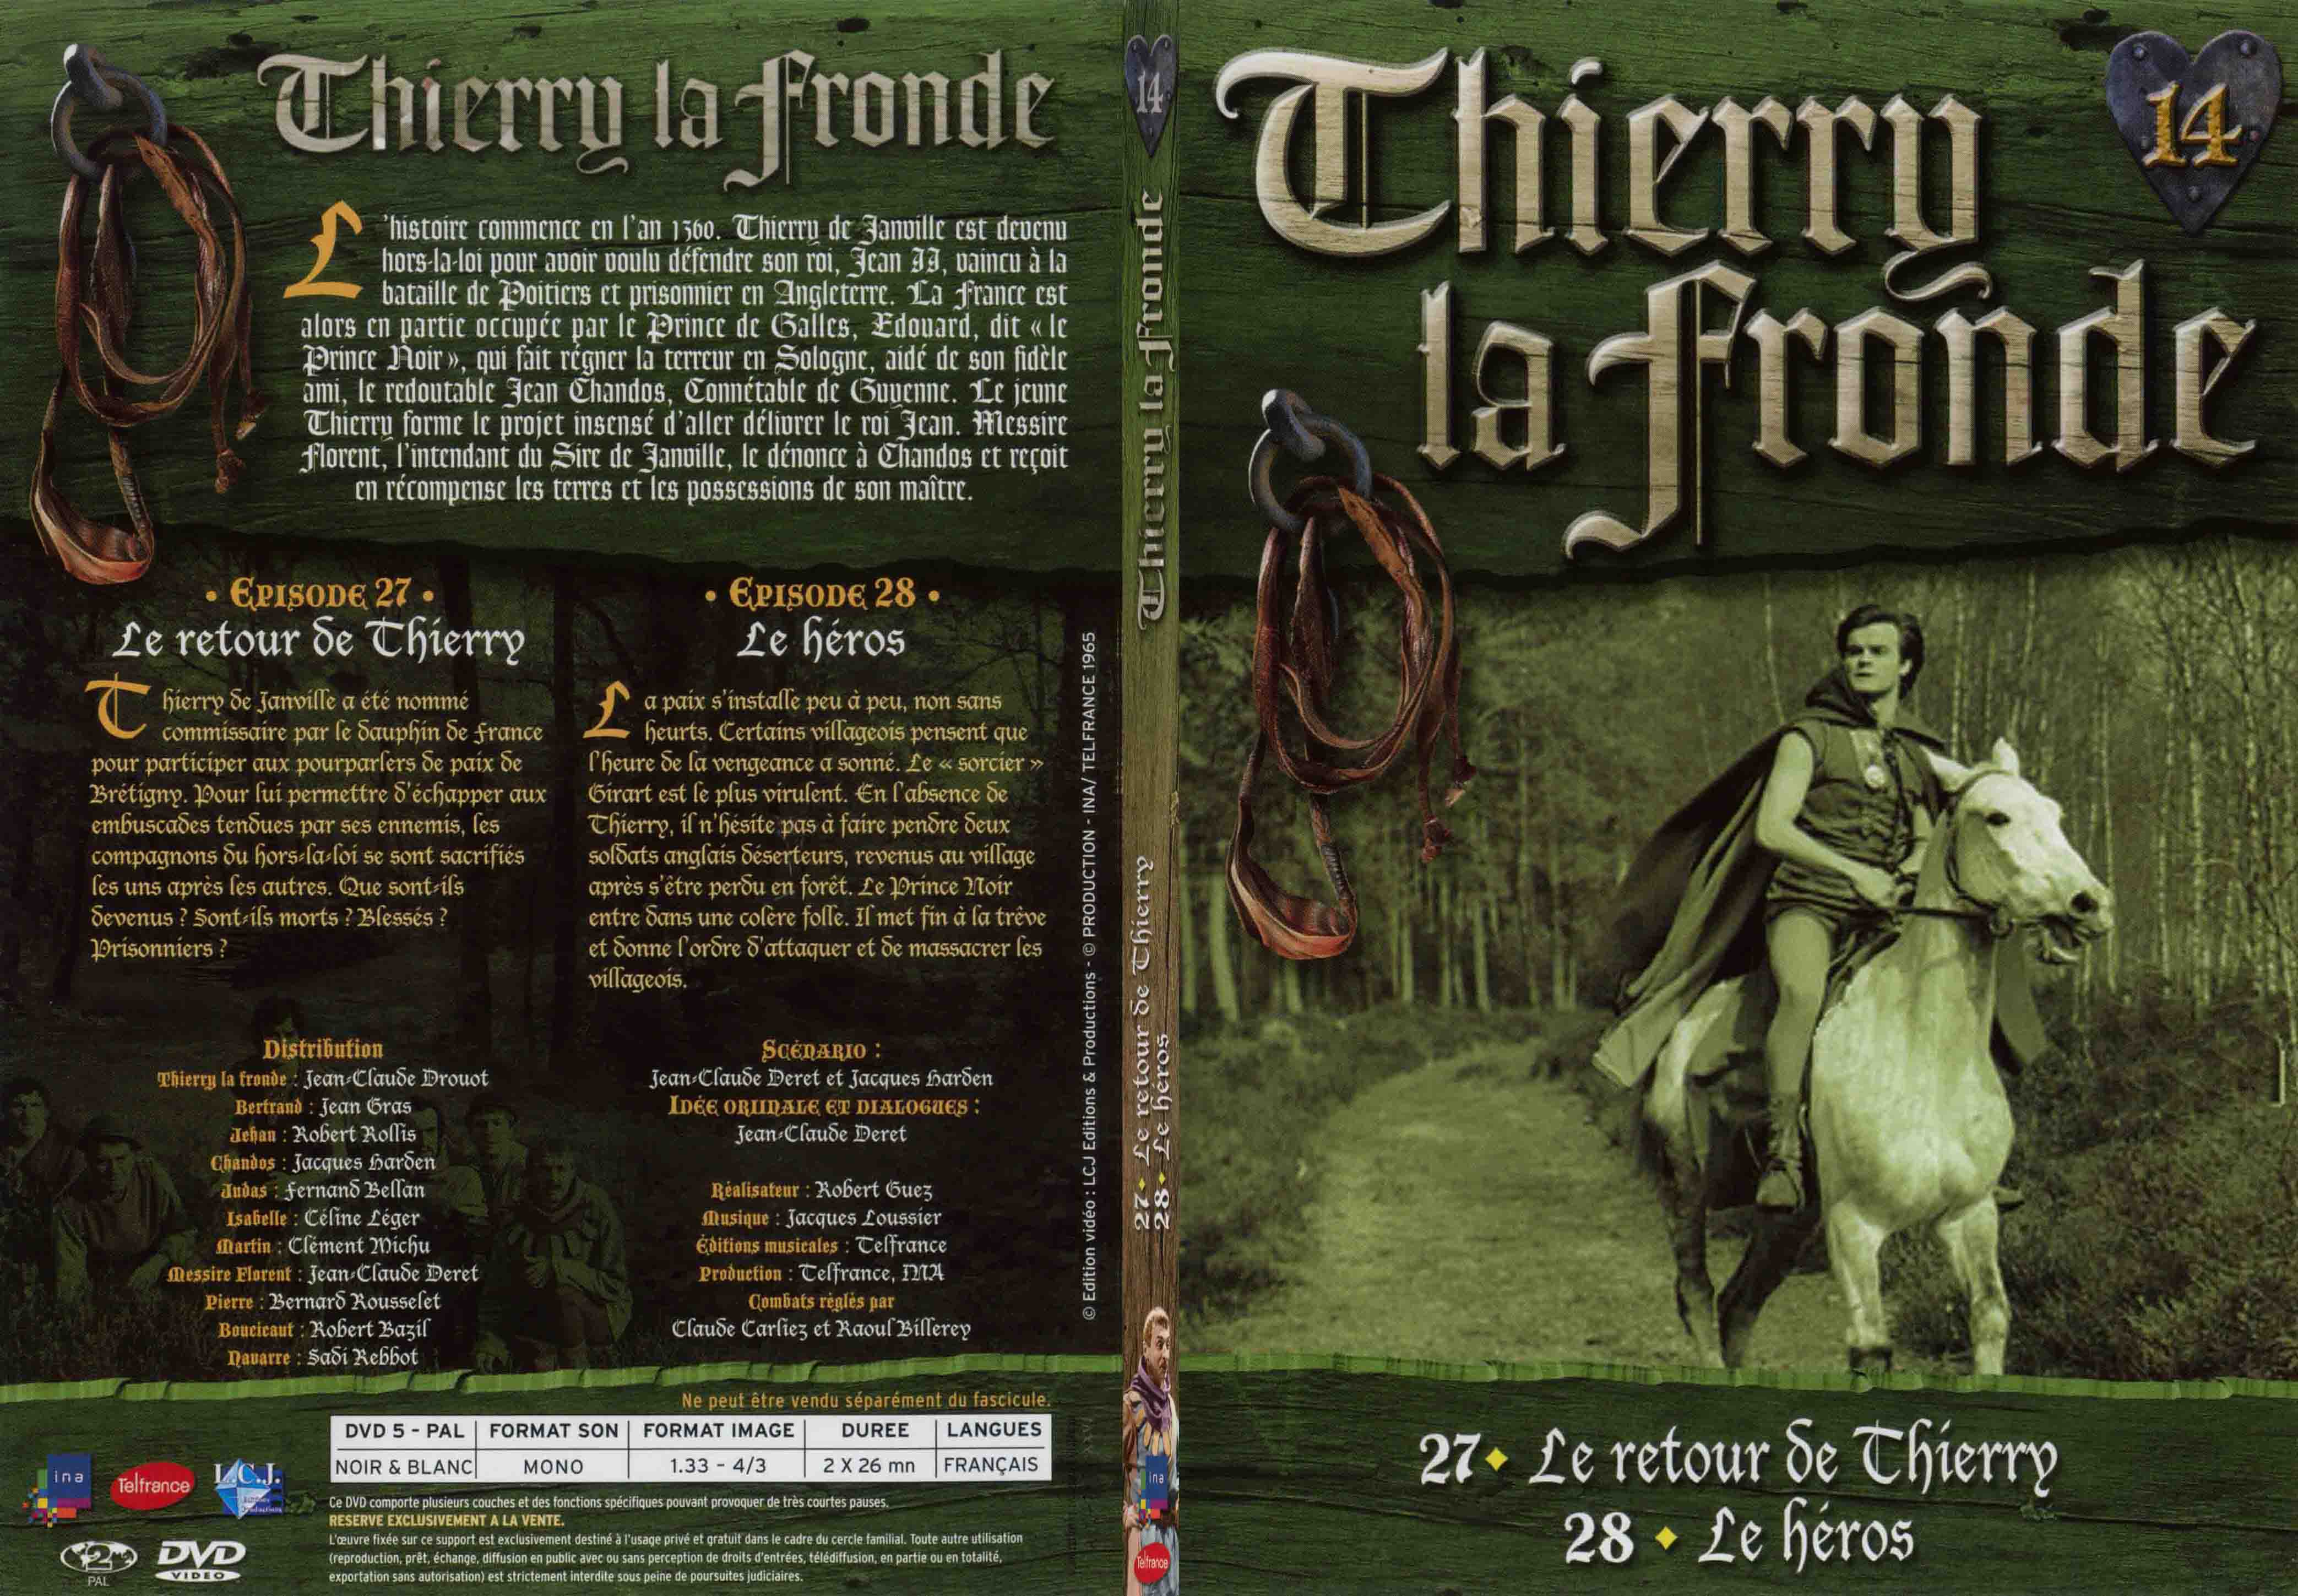 Jaquette DVD Thierry la Fronde vol 14 - SLIM